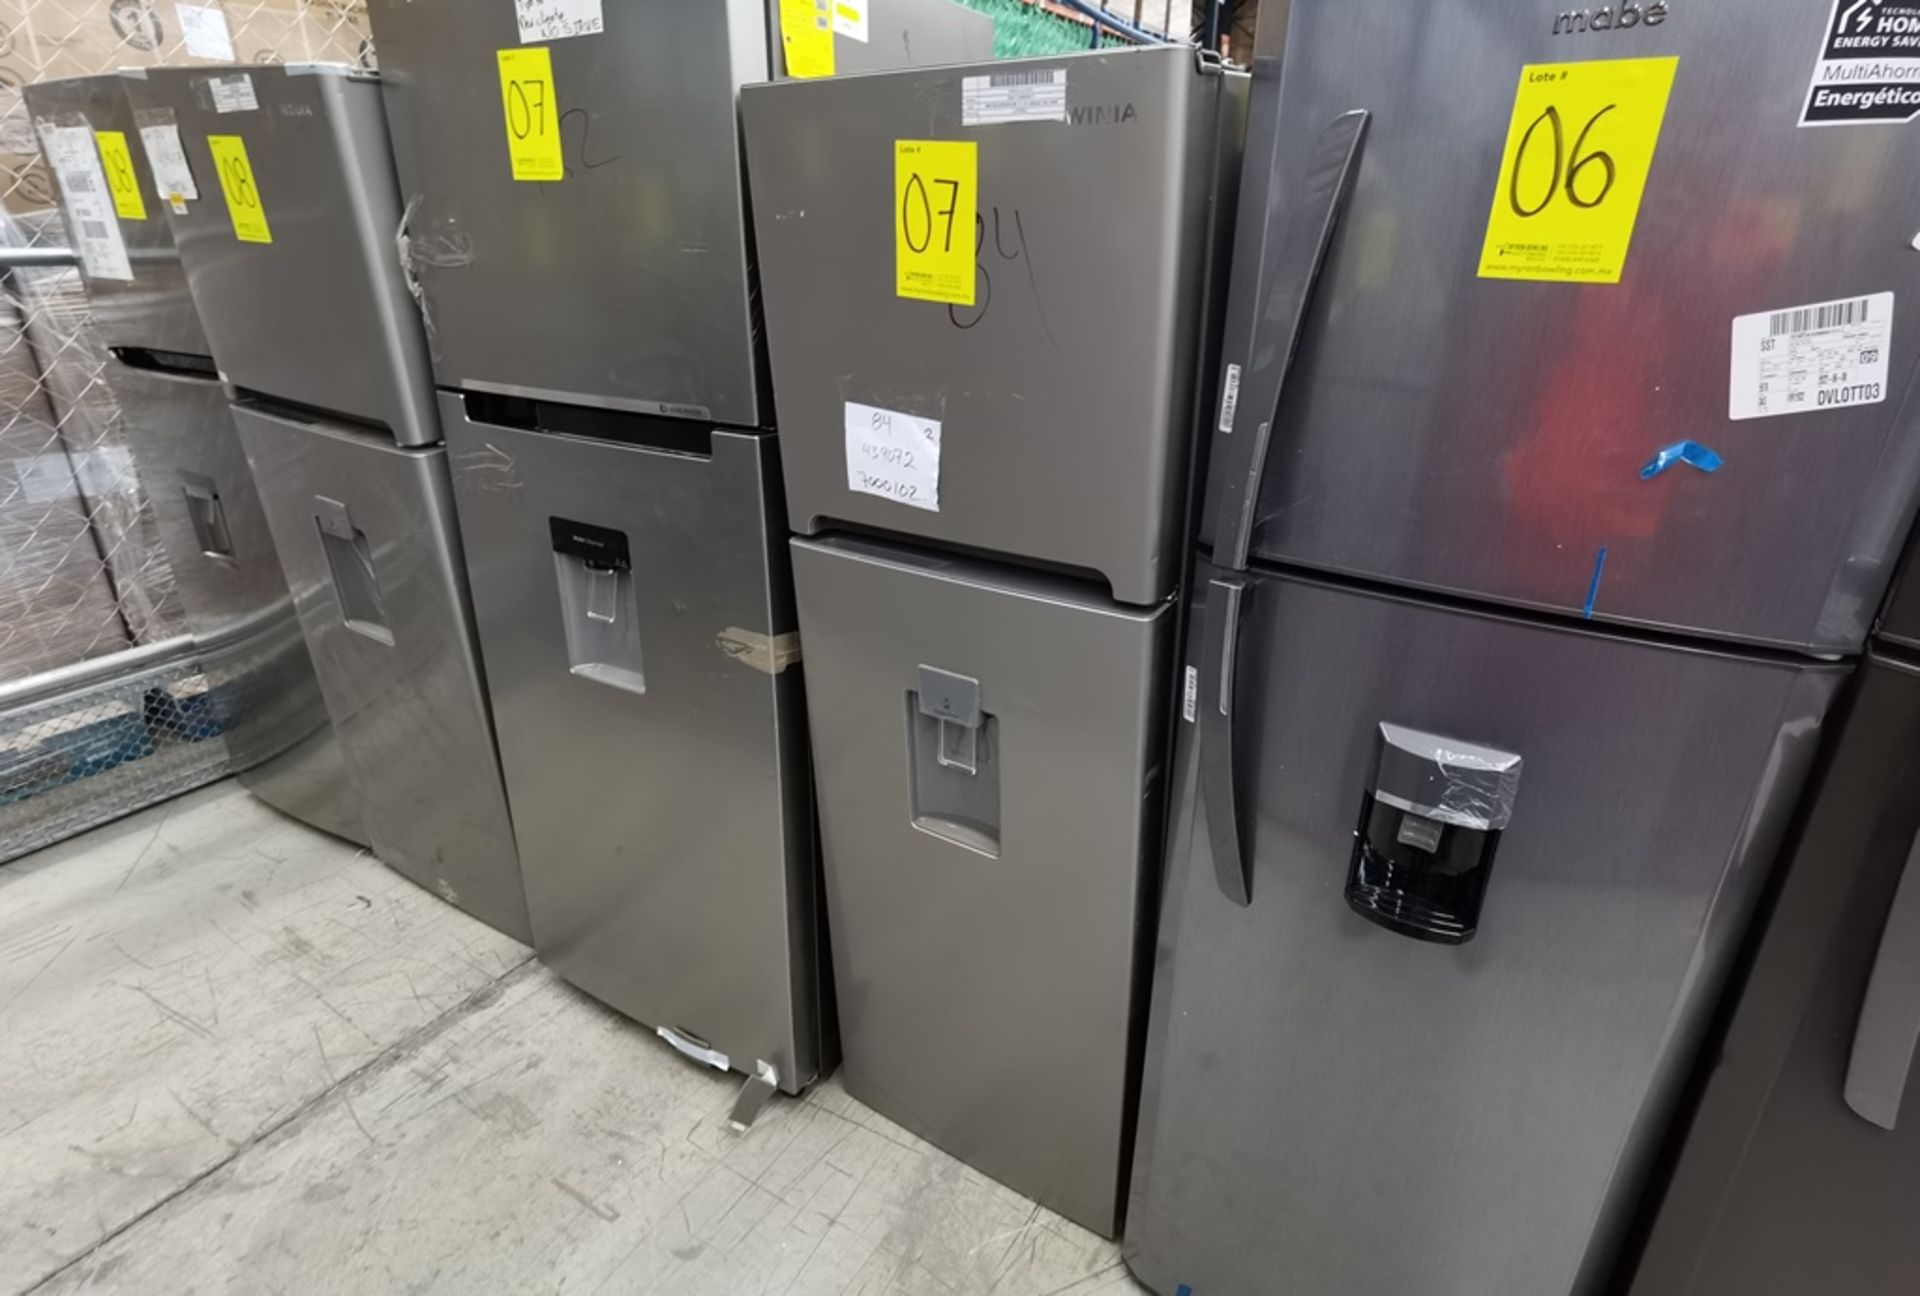 Lote De 2 Refrigeradores Contiene: 1 Refrigerador Marca Winia, Modelo DFR25210GMDX, Serie MR21yN118 - Image 6 of 19